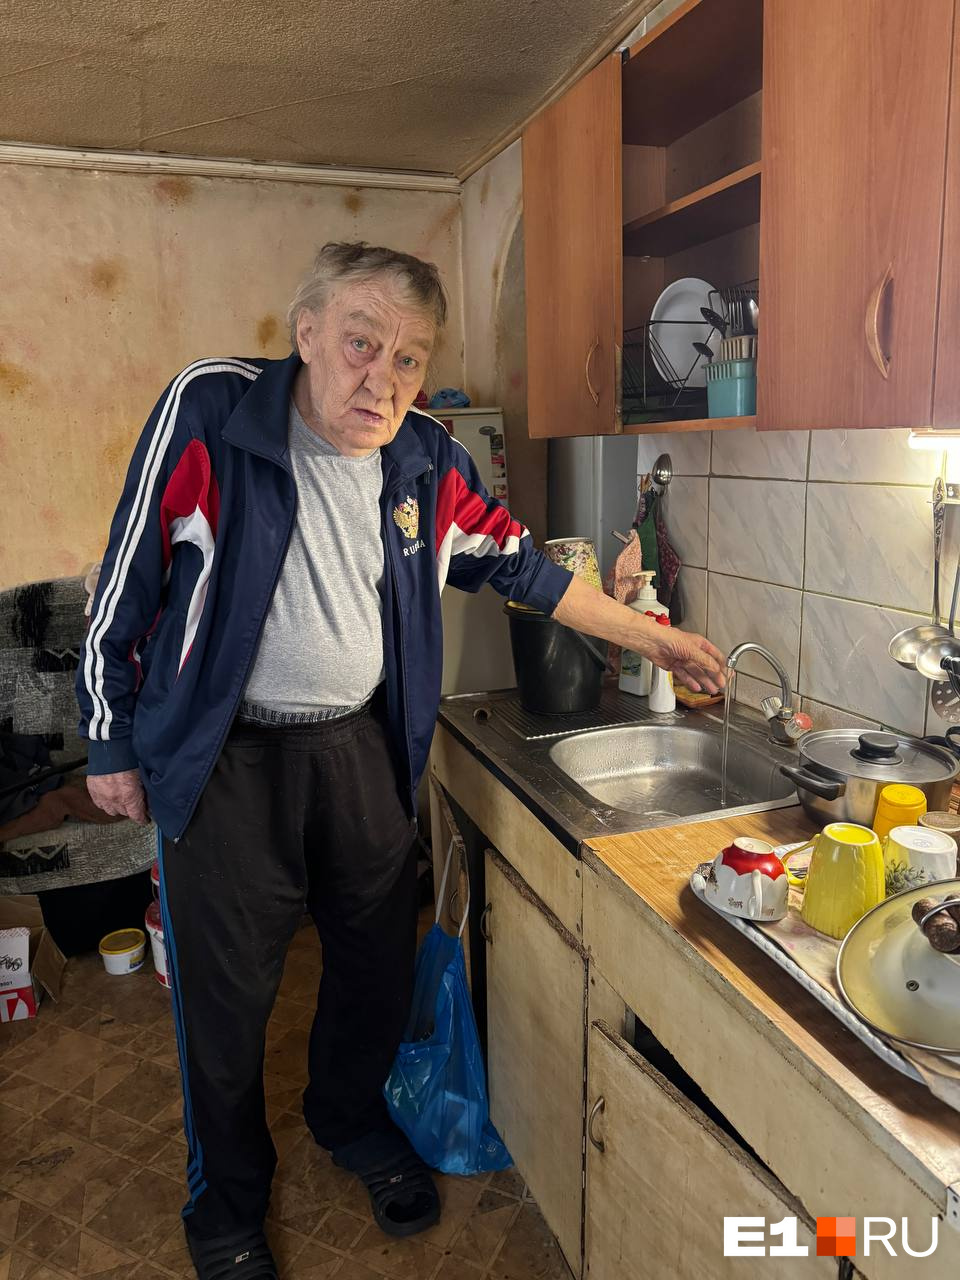 Учитель на пенсии выживал в доме без воды. Его спас сын бизнесмена из списка Forbes